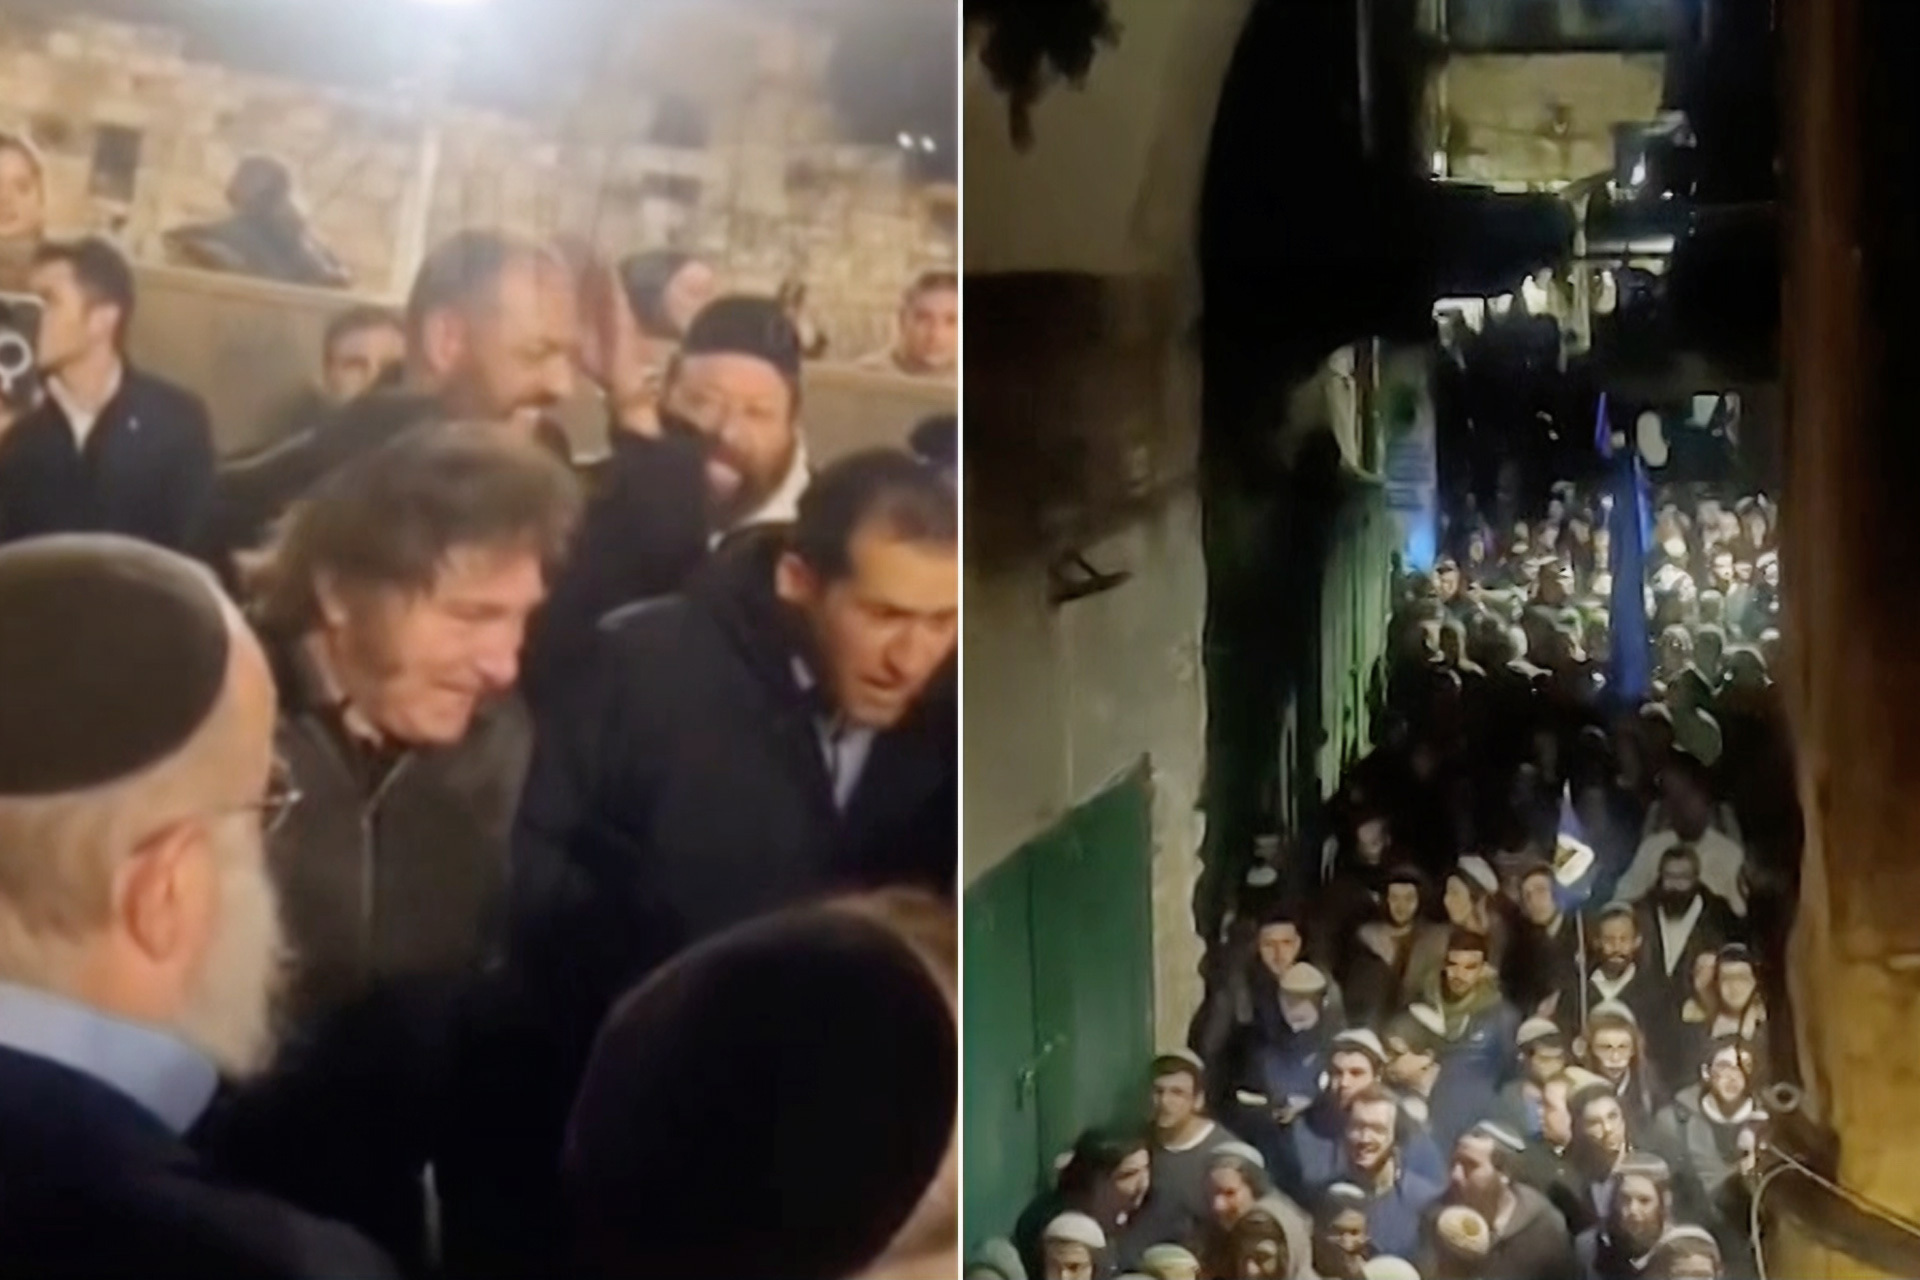 رئيس الأرجنتين يختتم زيارته لإسرائيل بالرقص مع المستوطنين عند حائط البراق | أخبار – البوكس نيوز